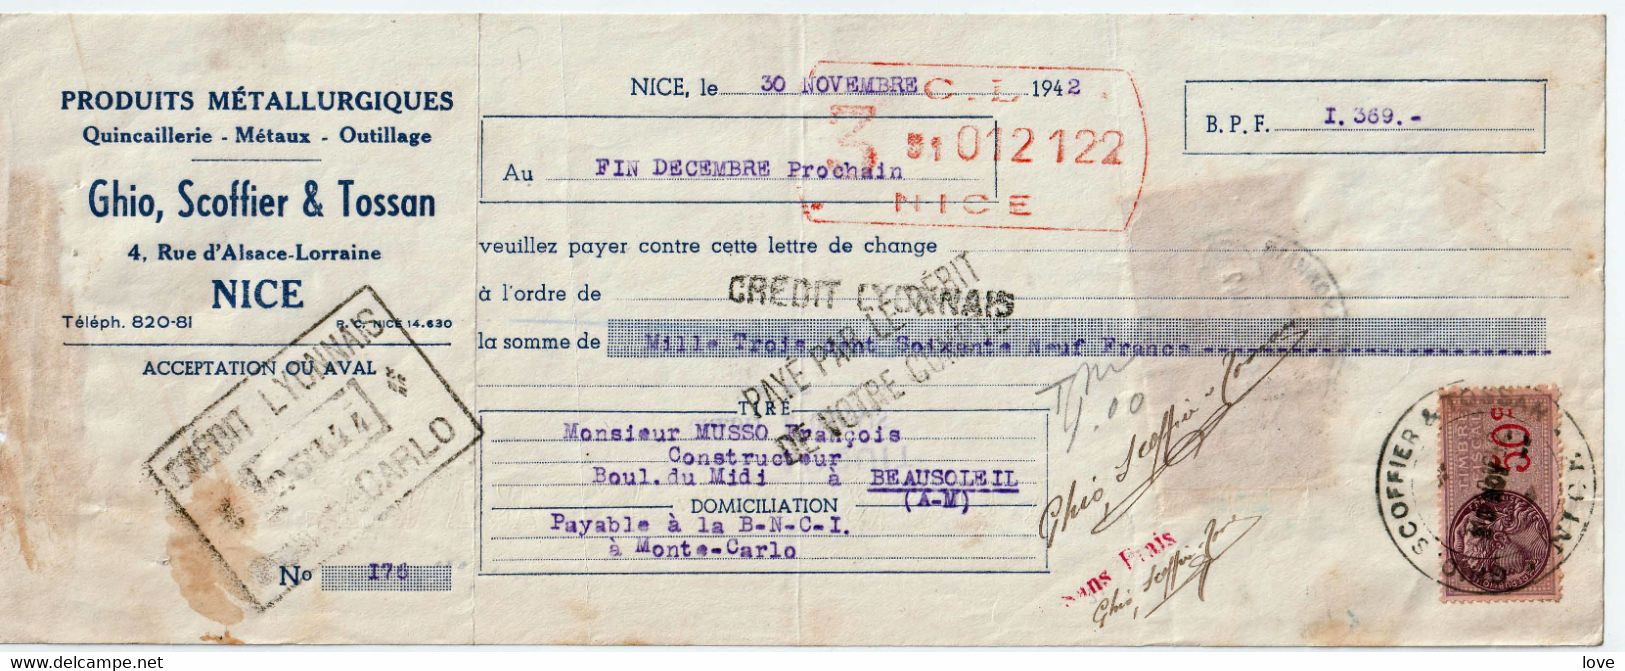 MONACO: Monnaie- Matières Sur Une Facture De M. Musso Du 30/11/1942 Avec Sa Lettre De Change, Afft. Fiscal France/Monaco - Mónaco